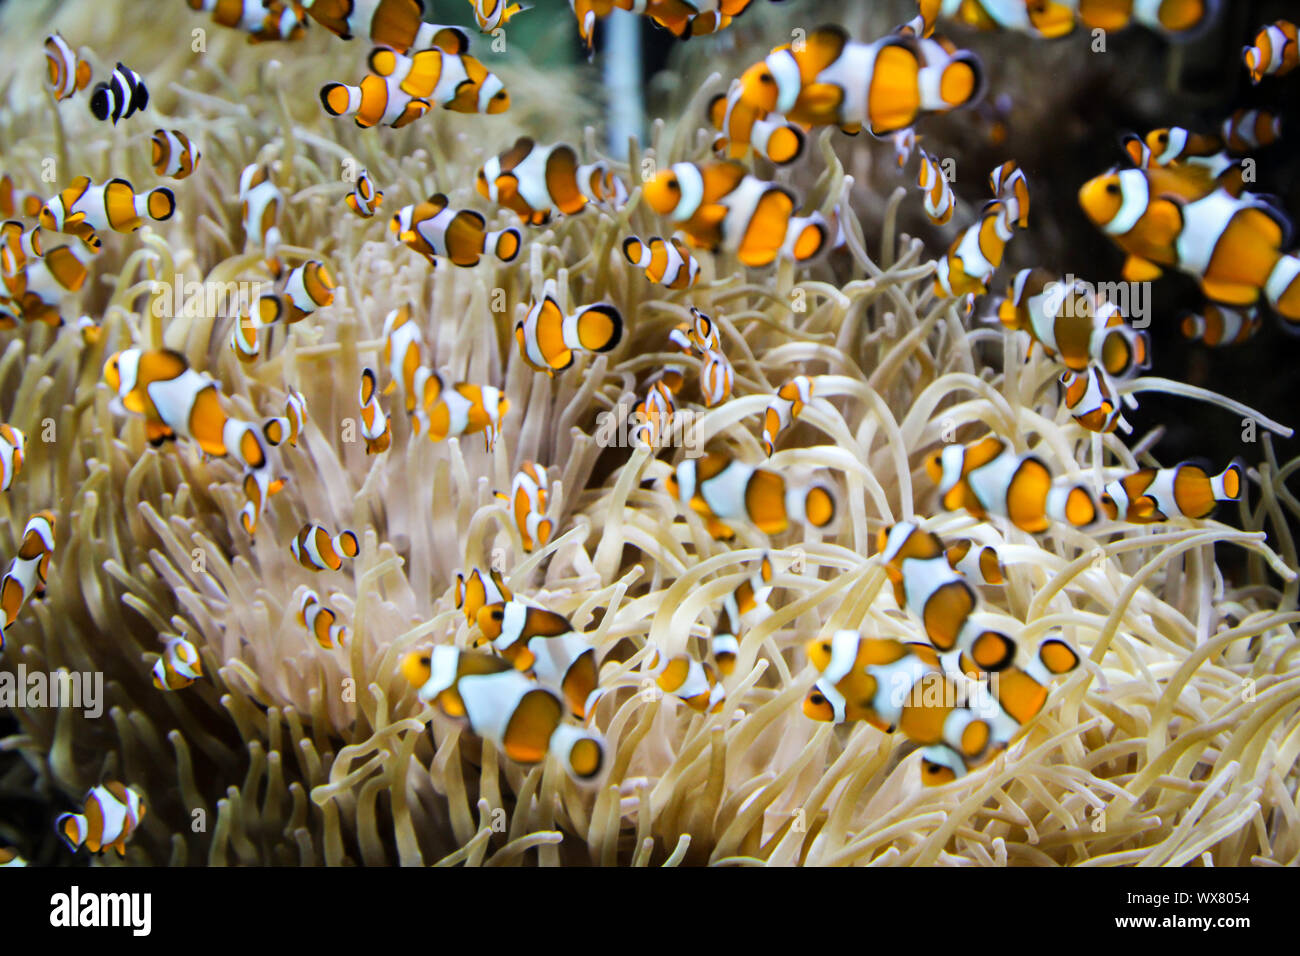 Anemonen Fische in einer Anemone Stockfoto